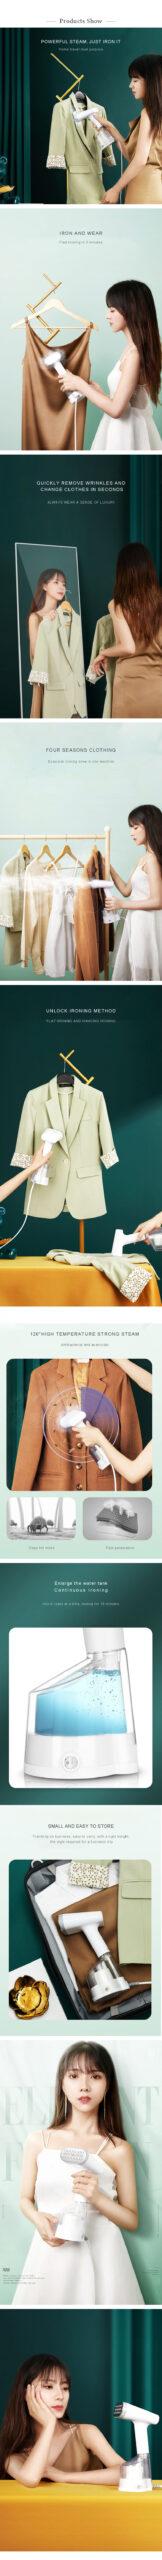 Portable Garment Steamer Hand-held Garment Steamer Hand-held Fabric Steam Iron 15 Seconds Fast Heat Strong Garment Steamer